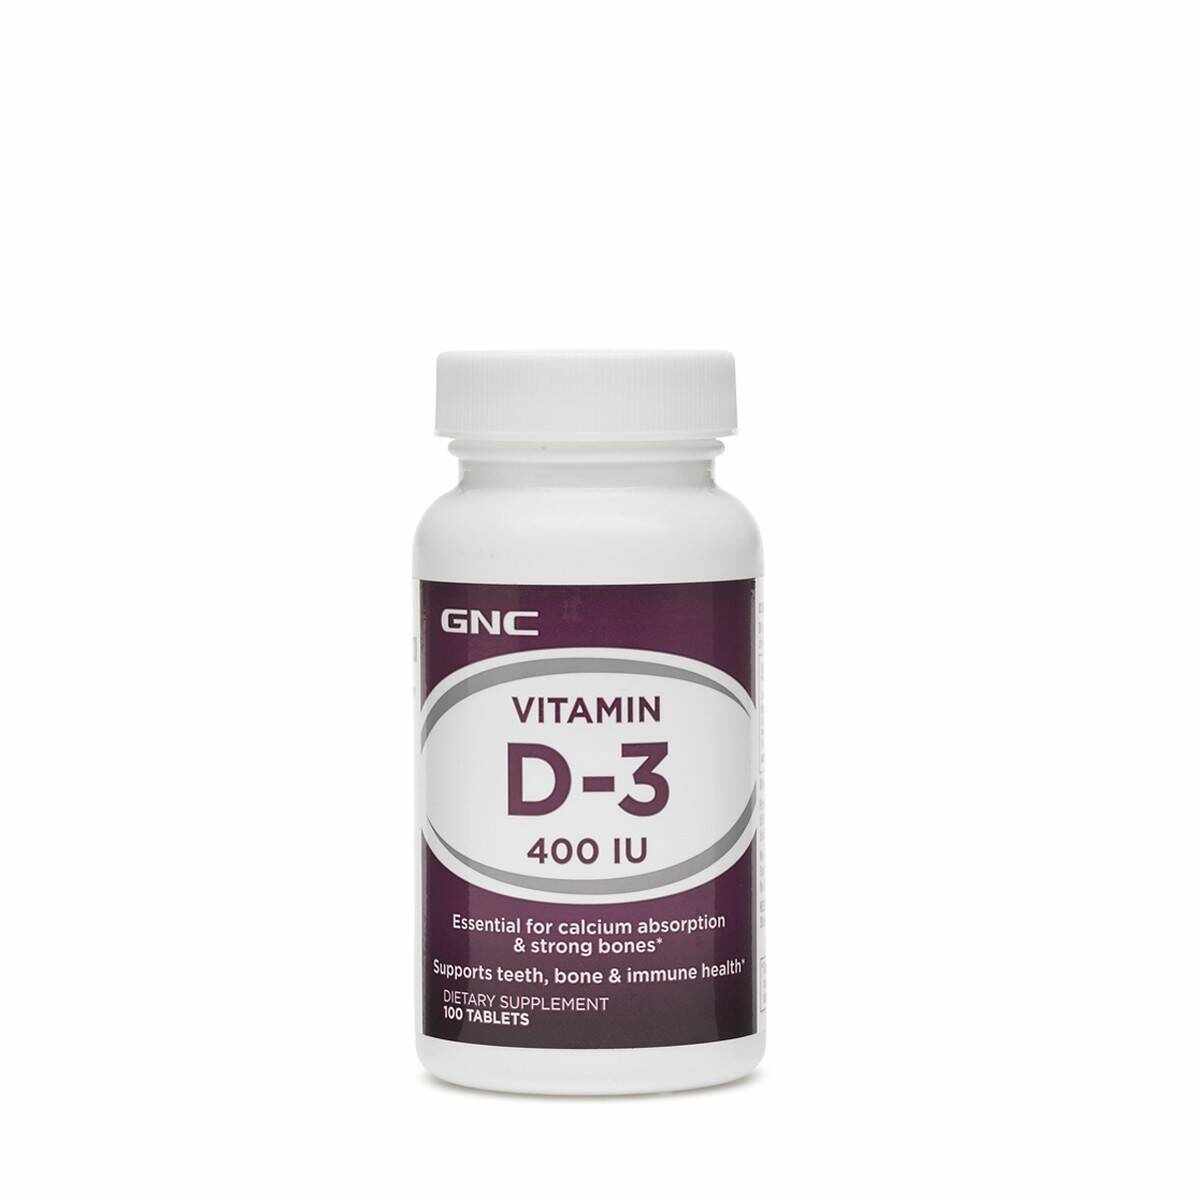 Vitamin D-3 400 Iu, Vitamina D-3 Colecalciferol 400 Ui, 100tb - Gnc